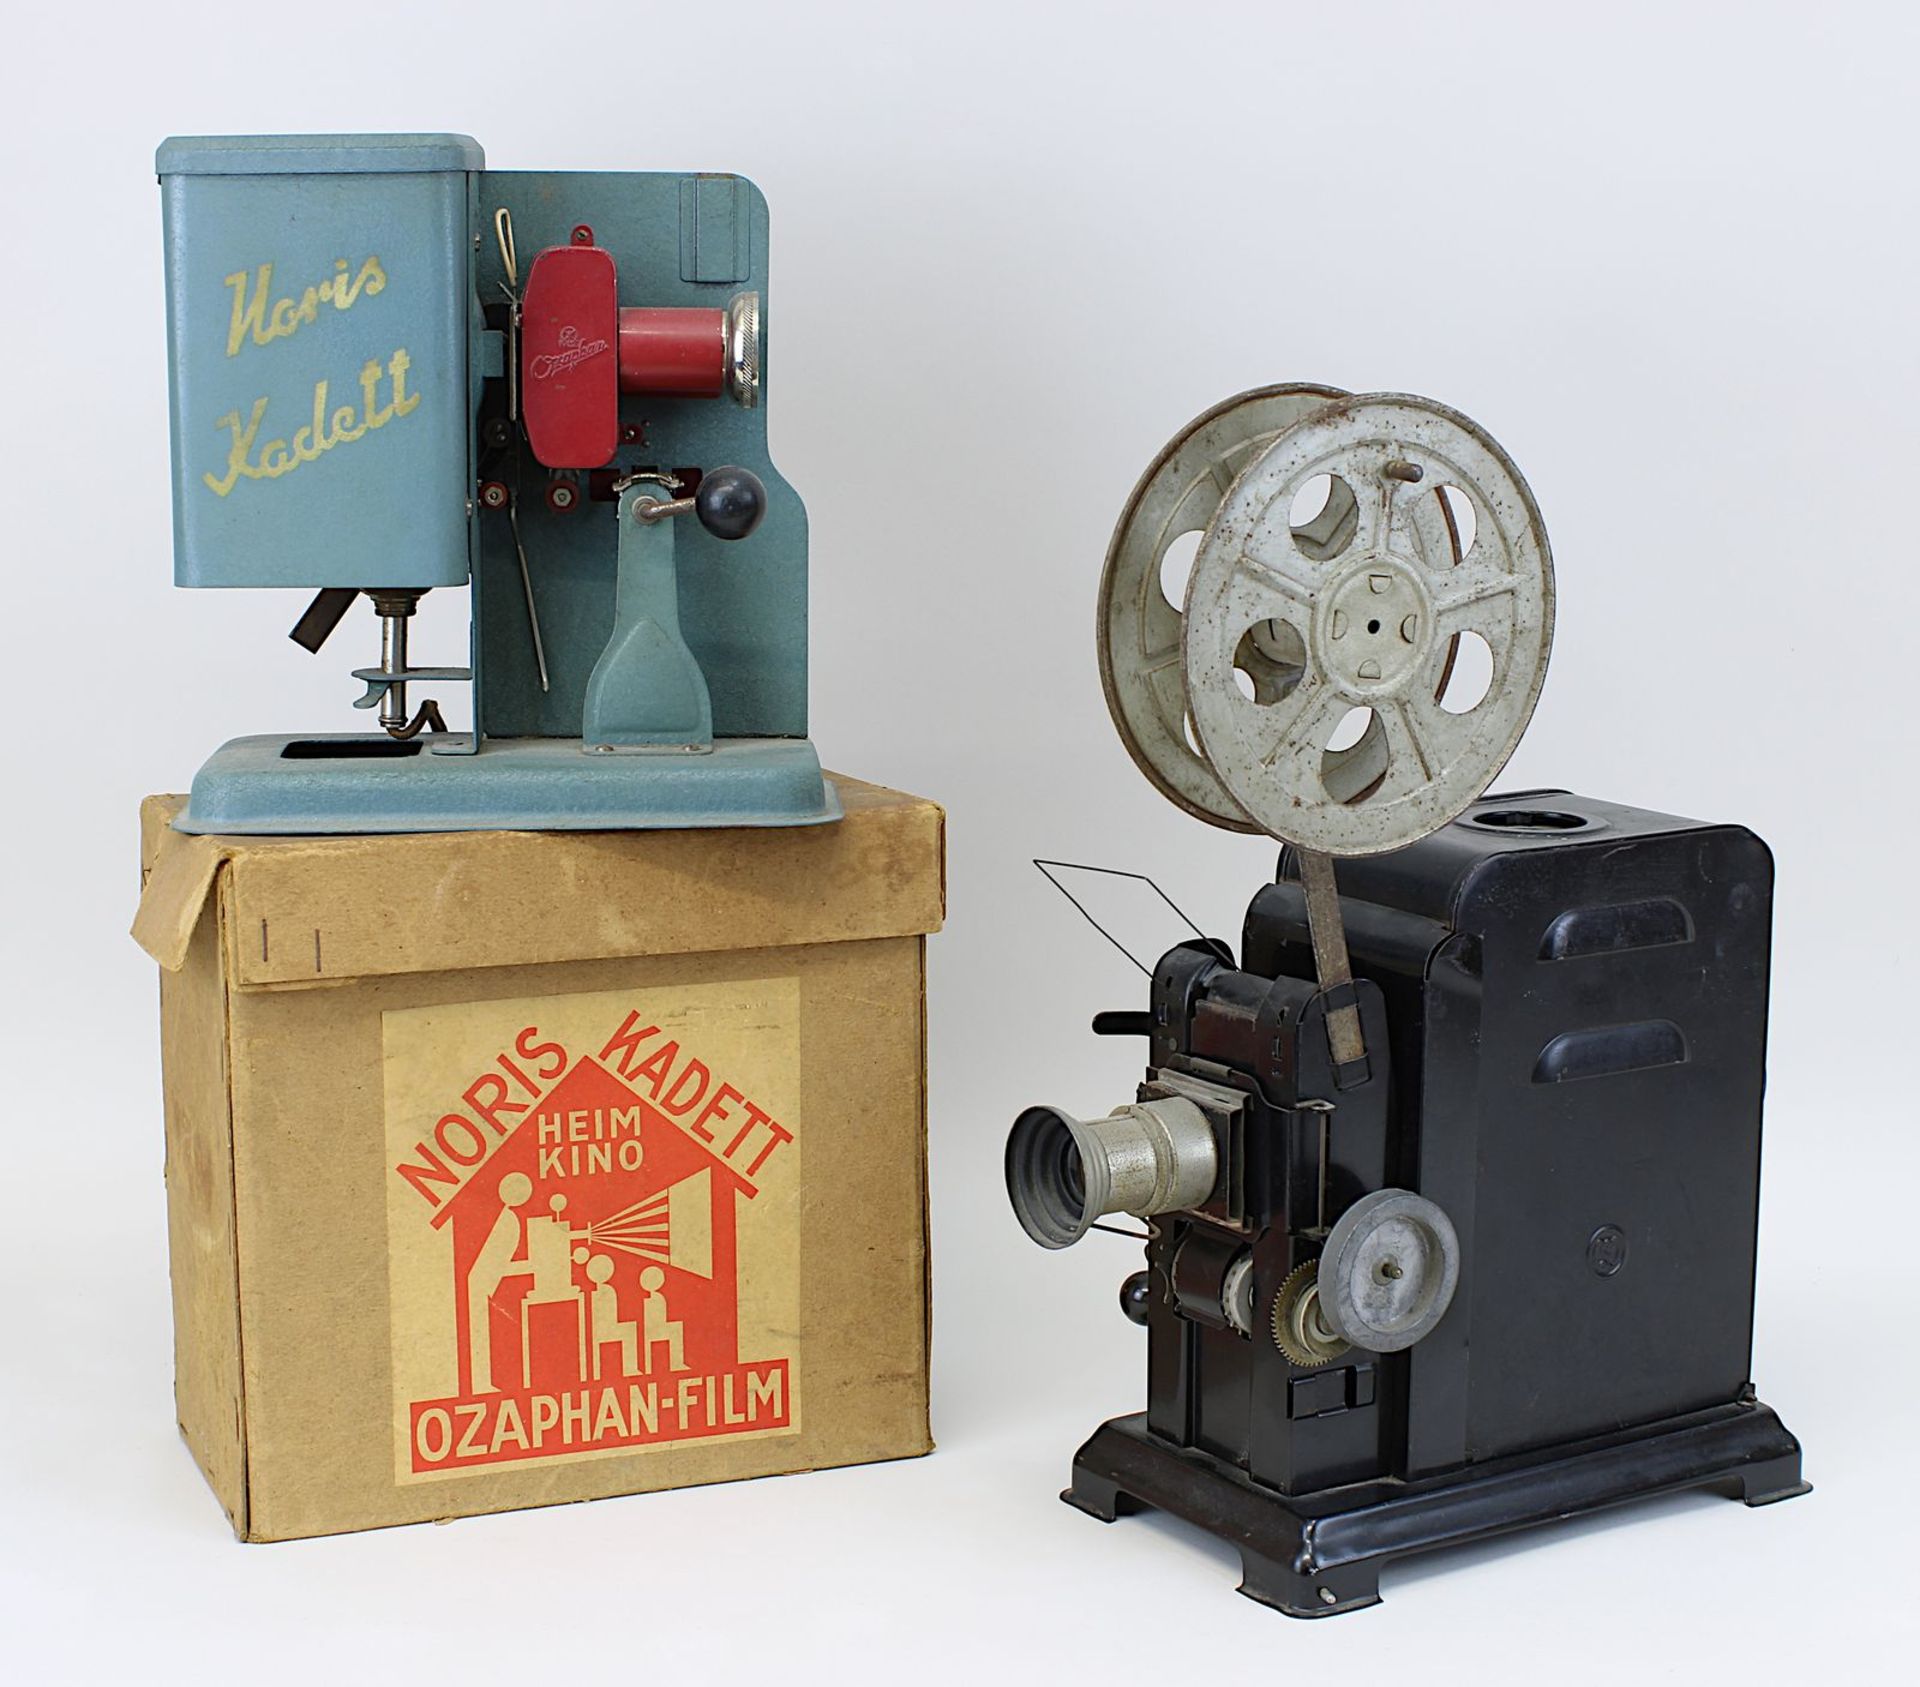 2 Filmprojektoren, 1930er Jahre, Noris Kadett Ozaphan - Projektor, im Original-Karton, mehrteilige